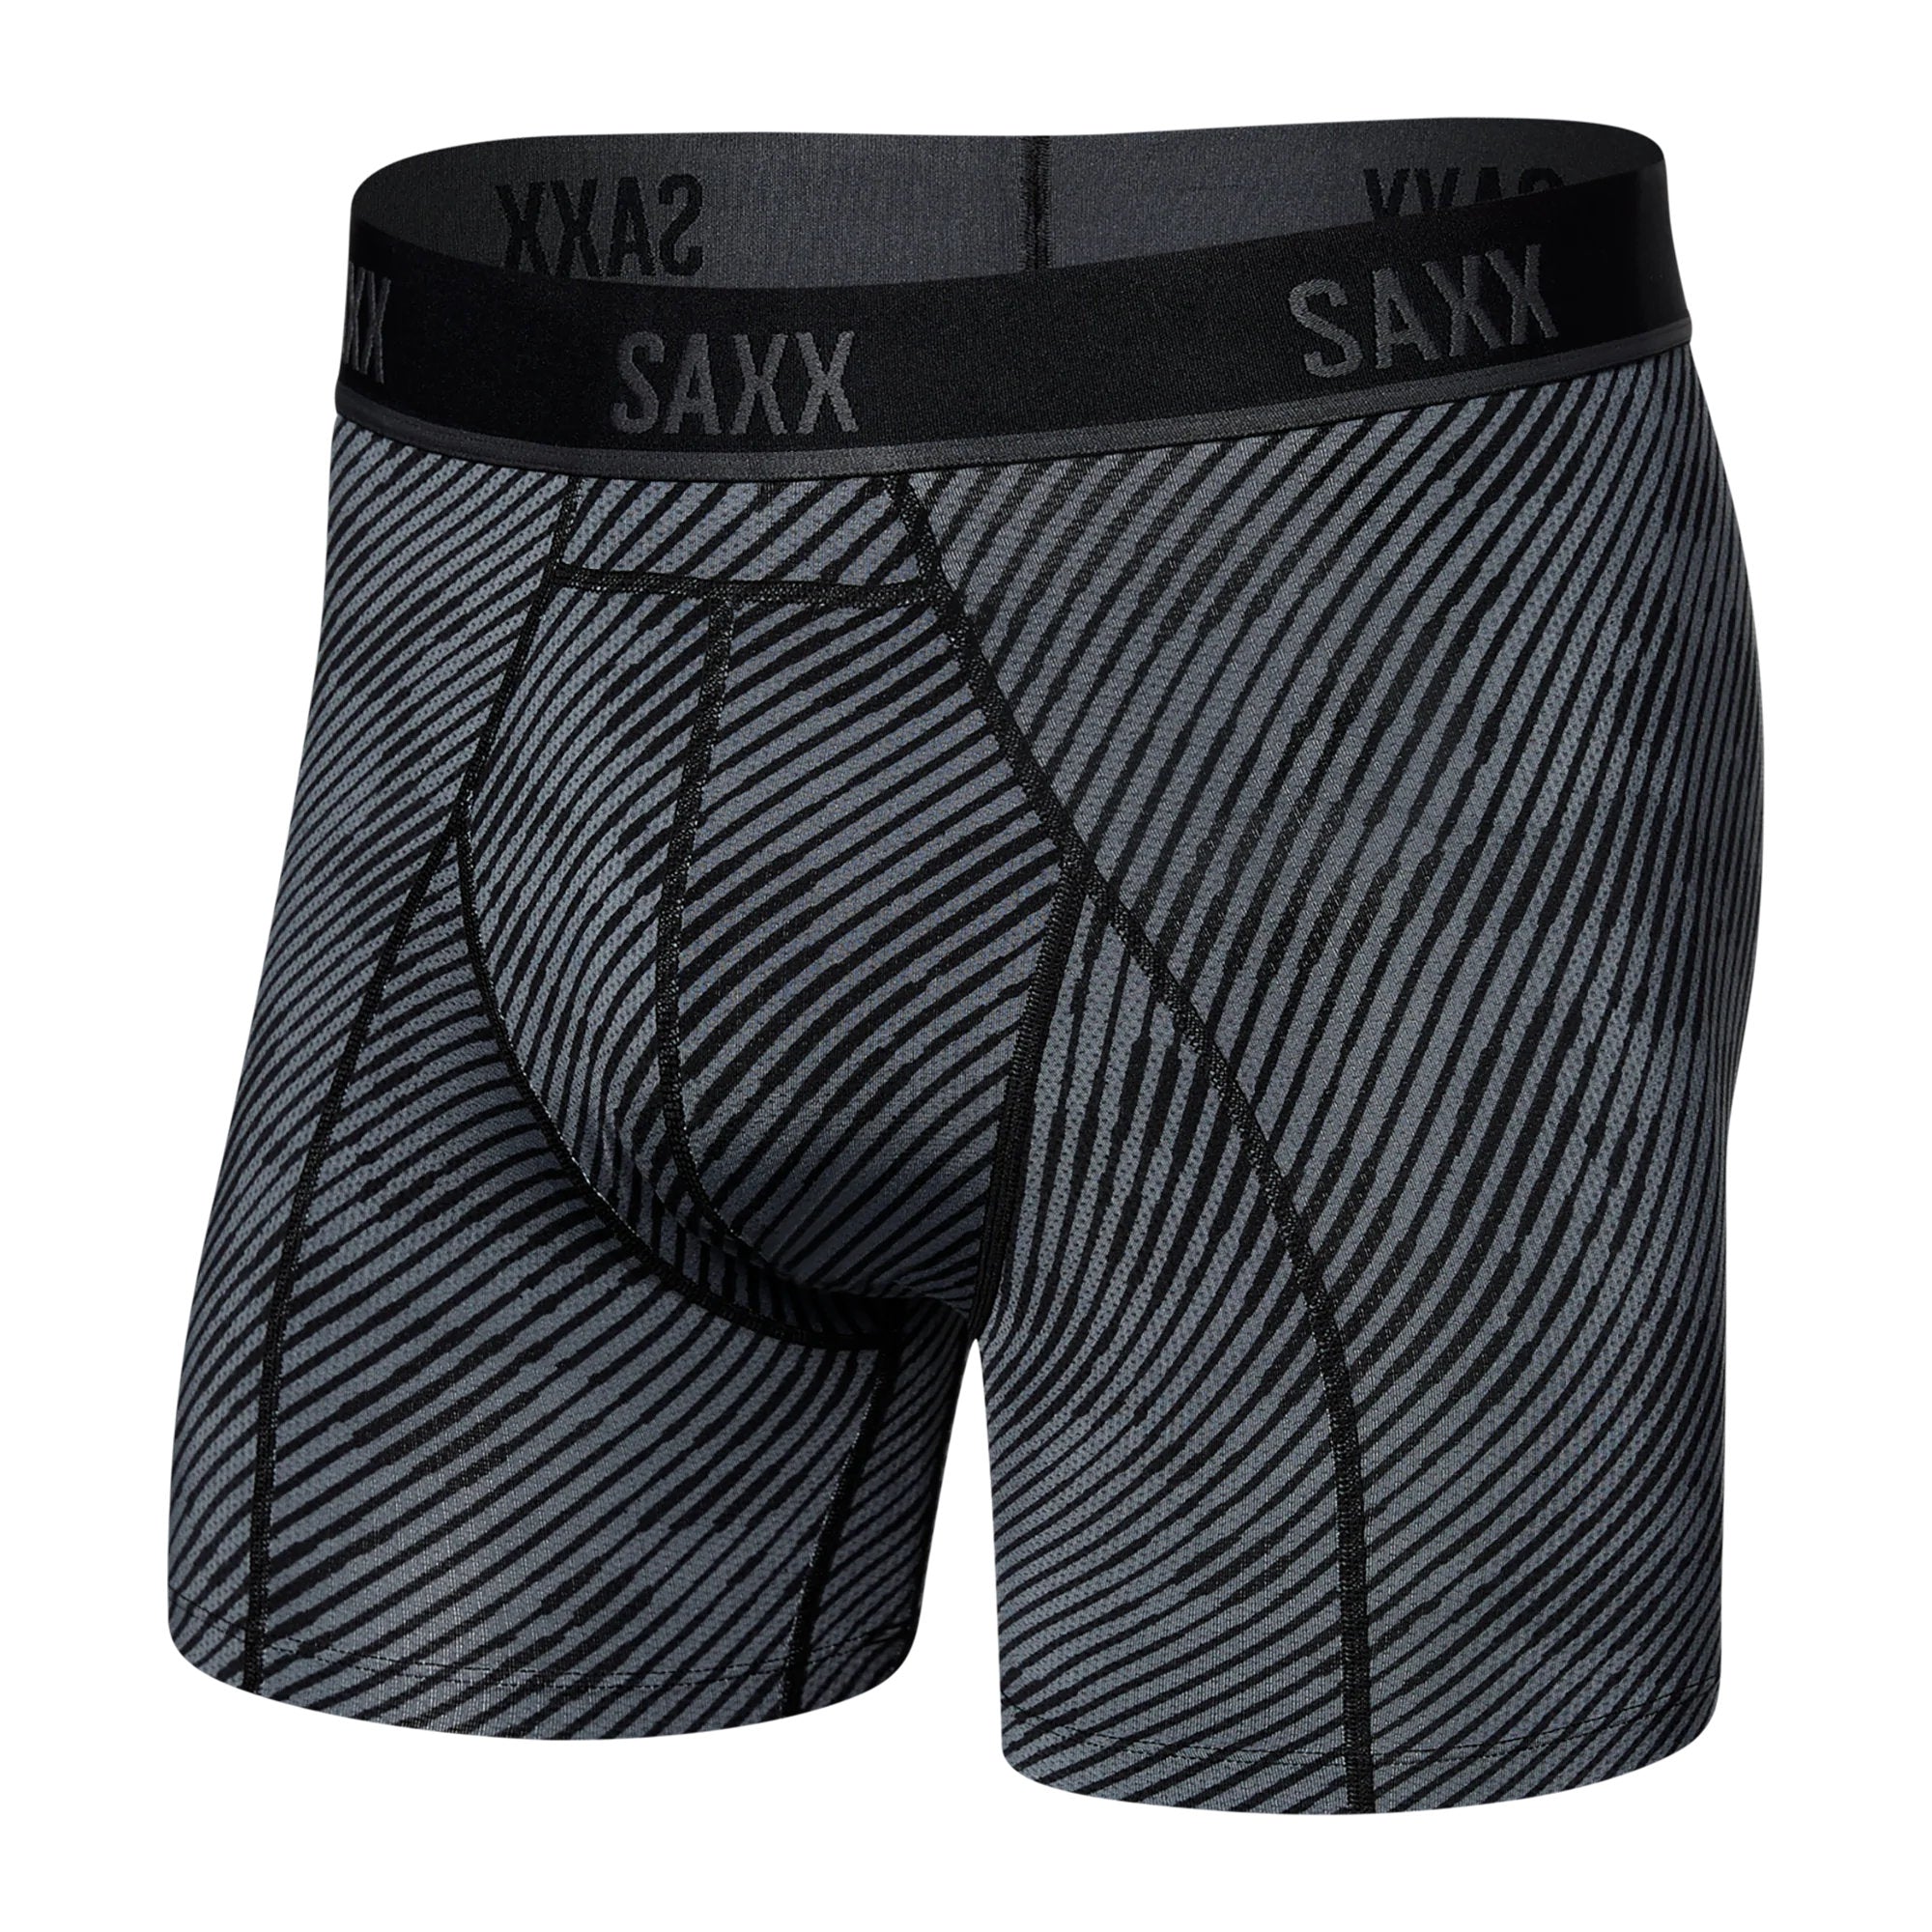 SAXX Kinetic Light Compression Mesh Boxer Brief - Optic Camo - Black - 1 - Underwear - Boxer Briefs